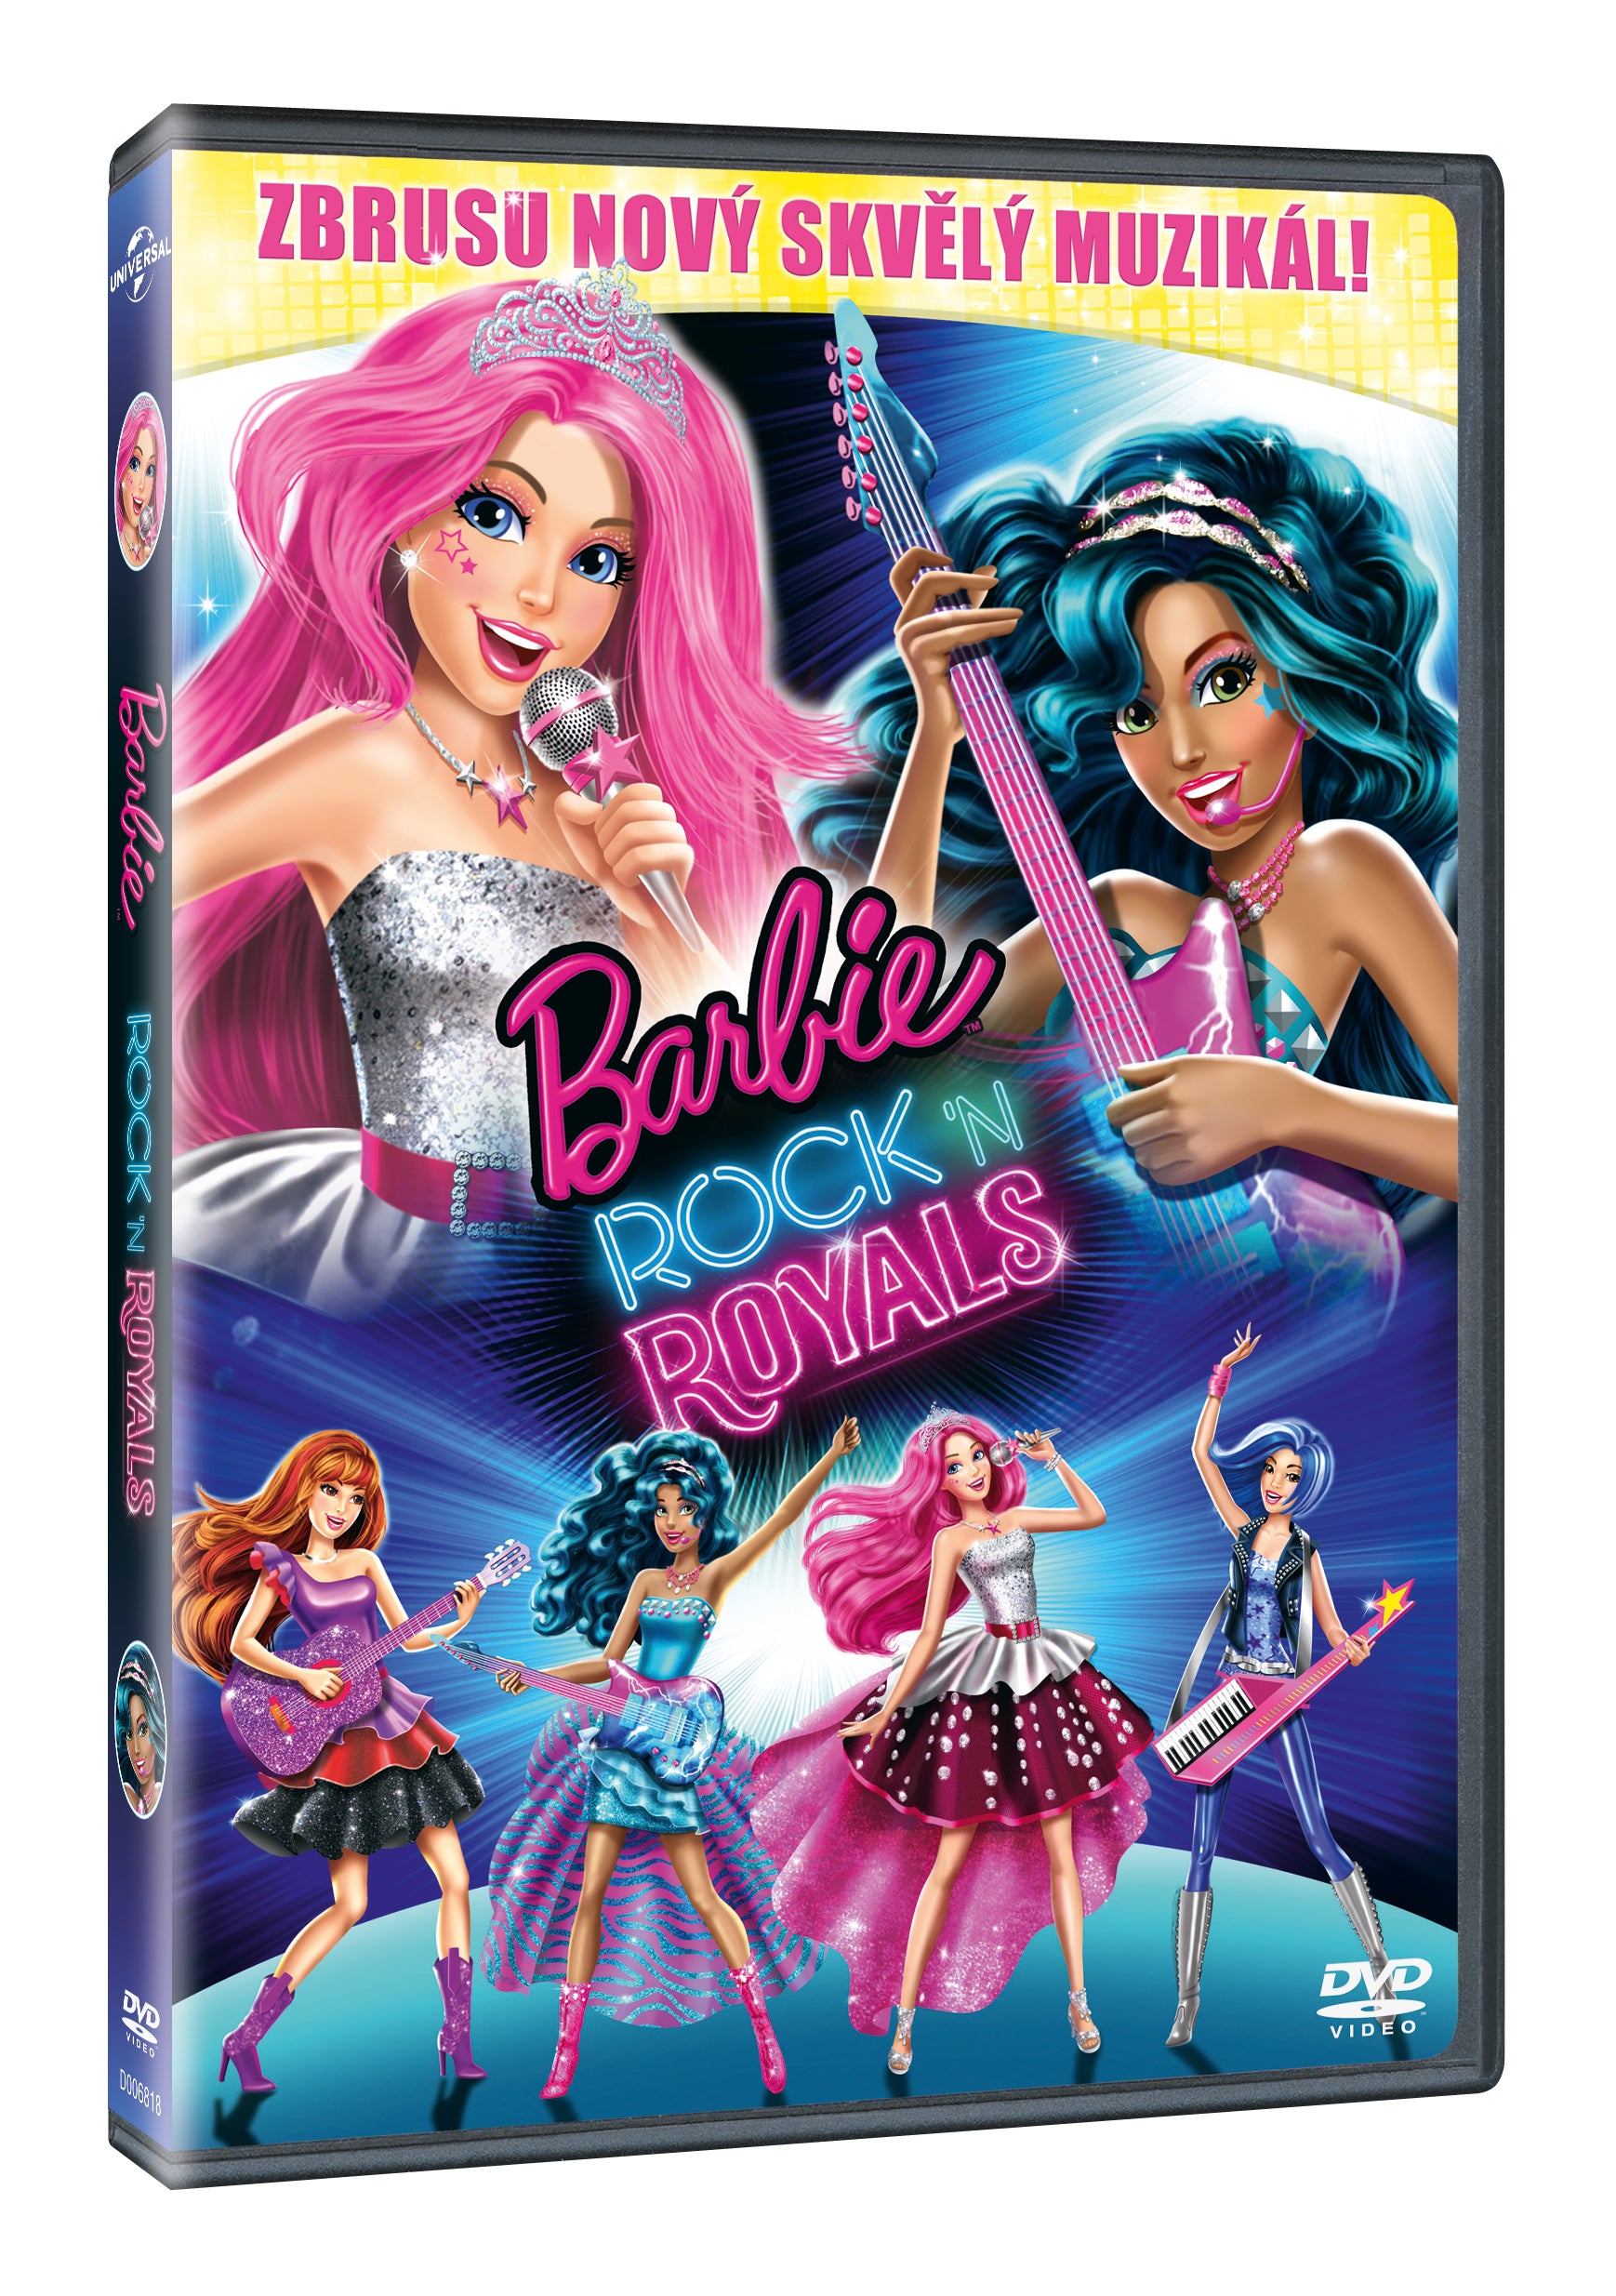 Barbie Rock'n Royals DVD / Barbie in Rock'n Royals